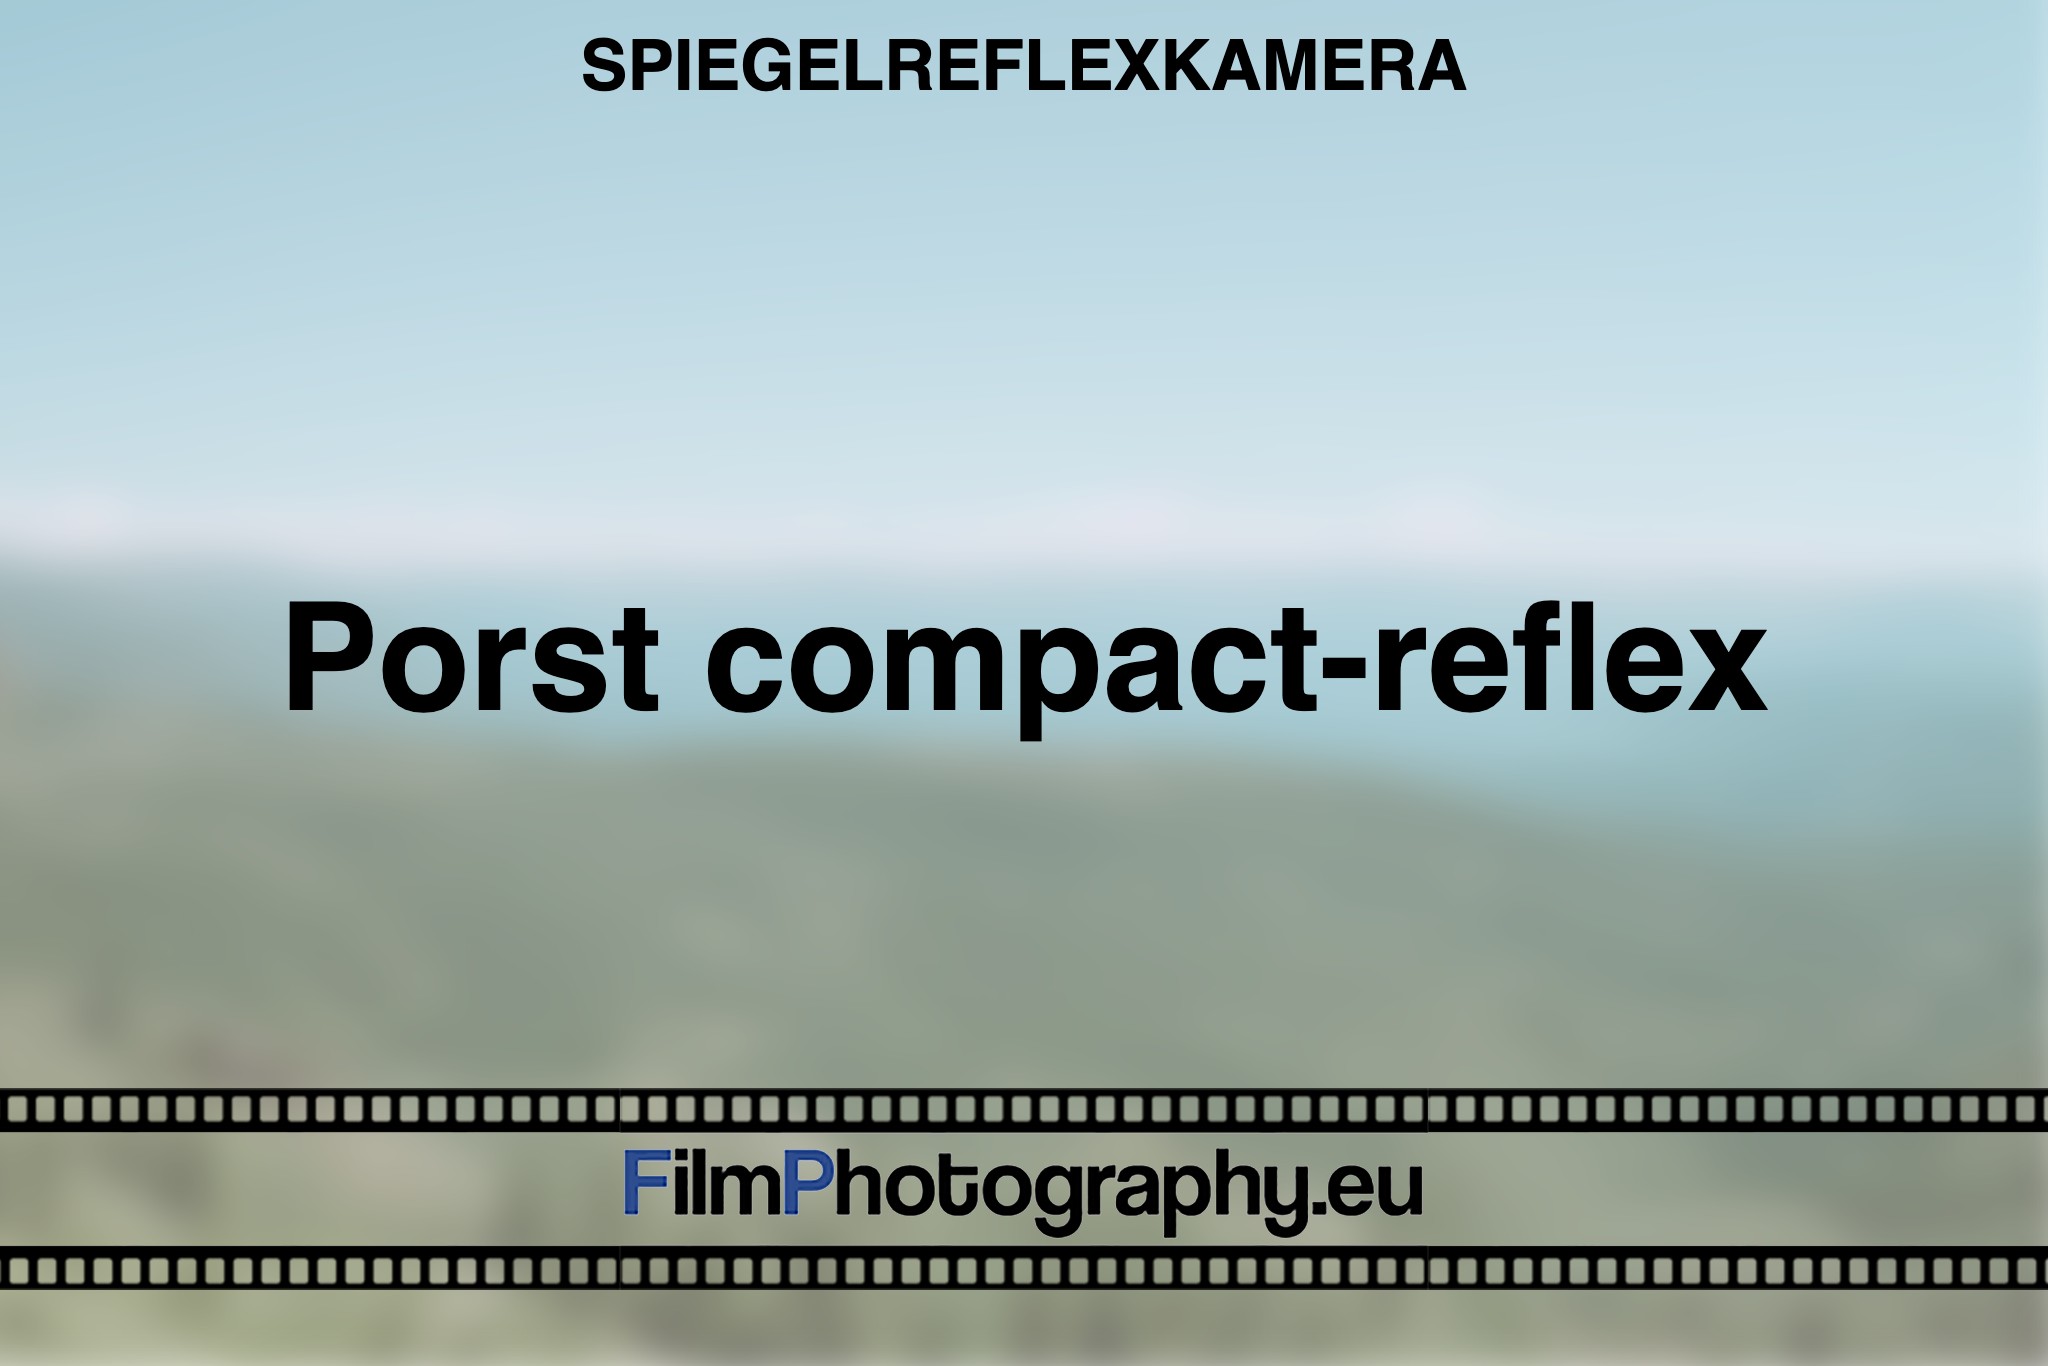 porst-compact-reflex-spiegelreflexkamera-bnv